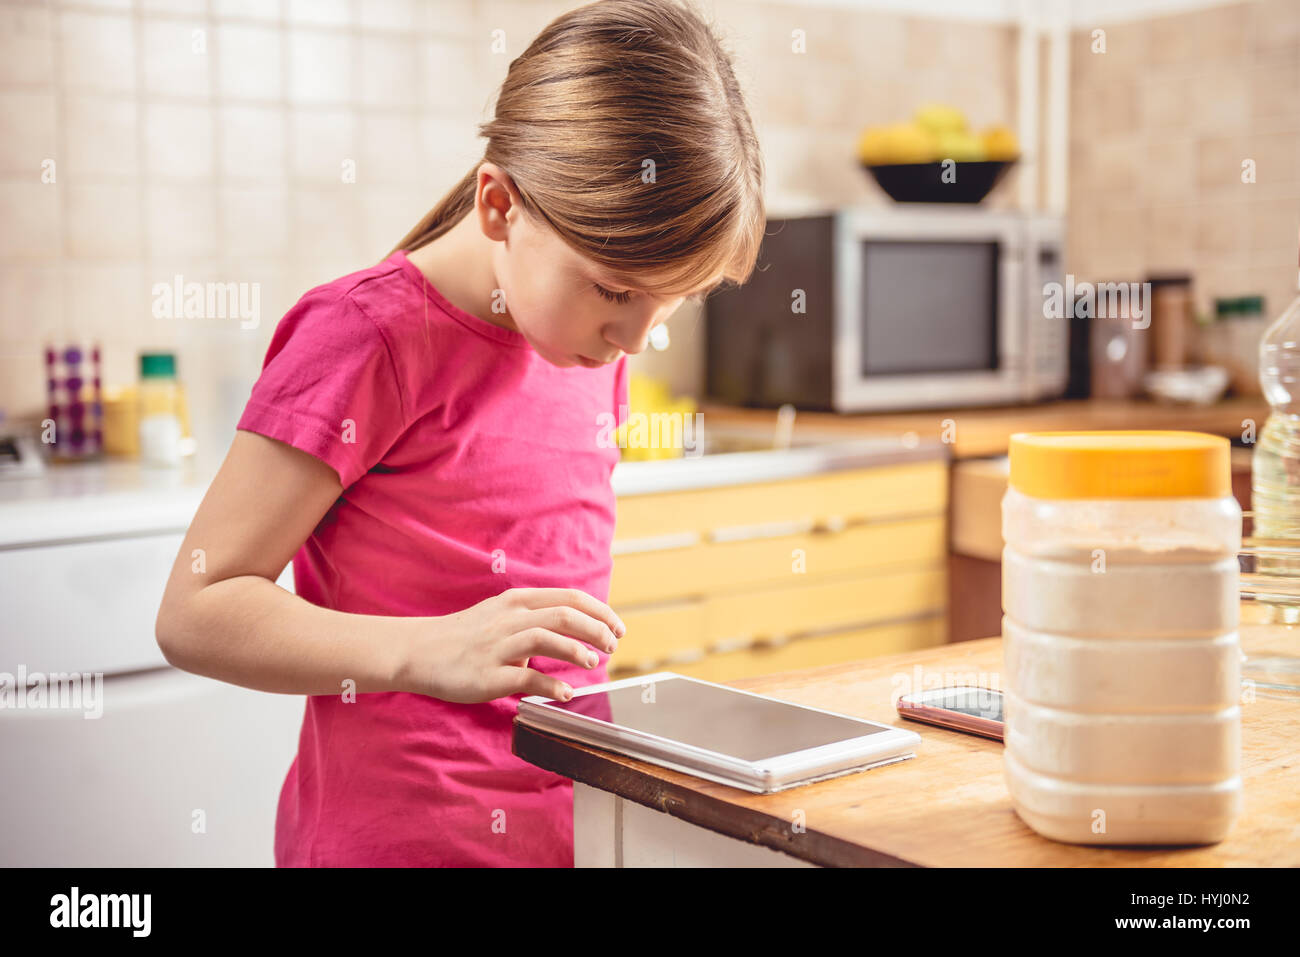 Little girl wearing pink shirt à l'aide de tablette dans la cuisine Banque D'Images